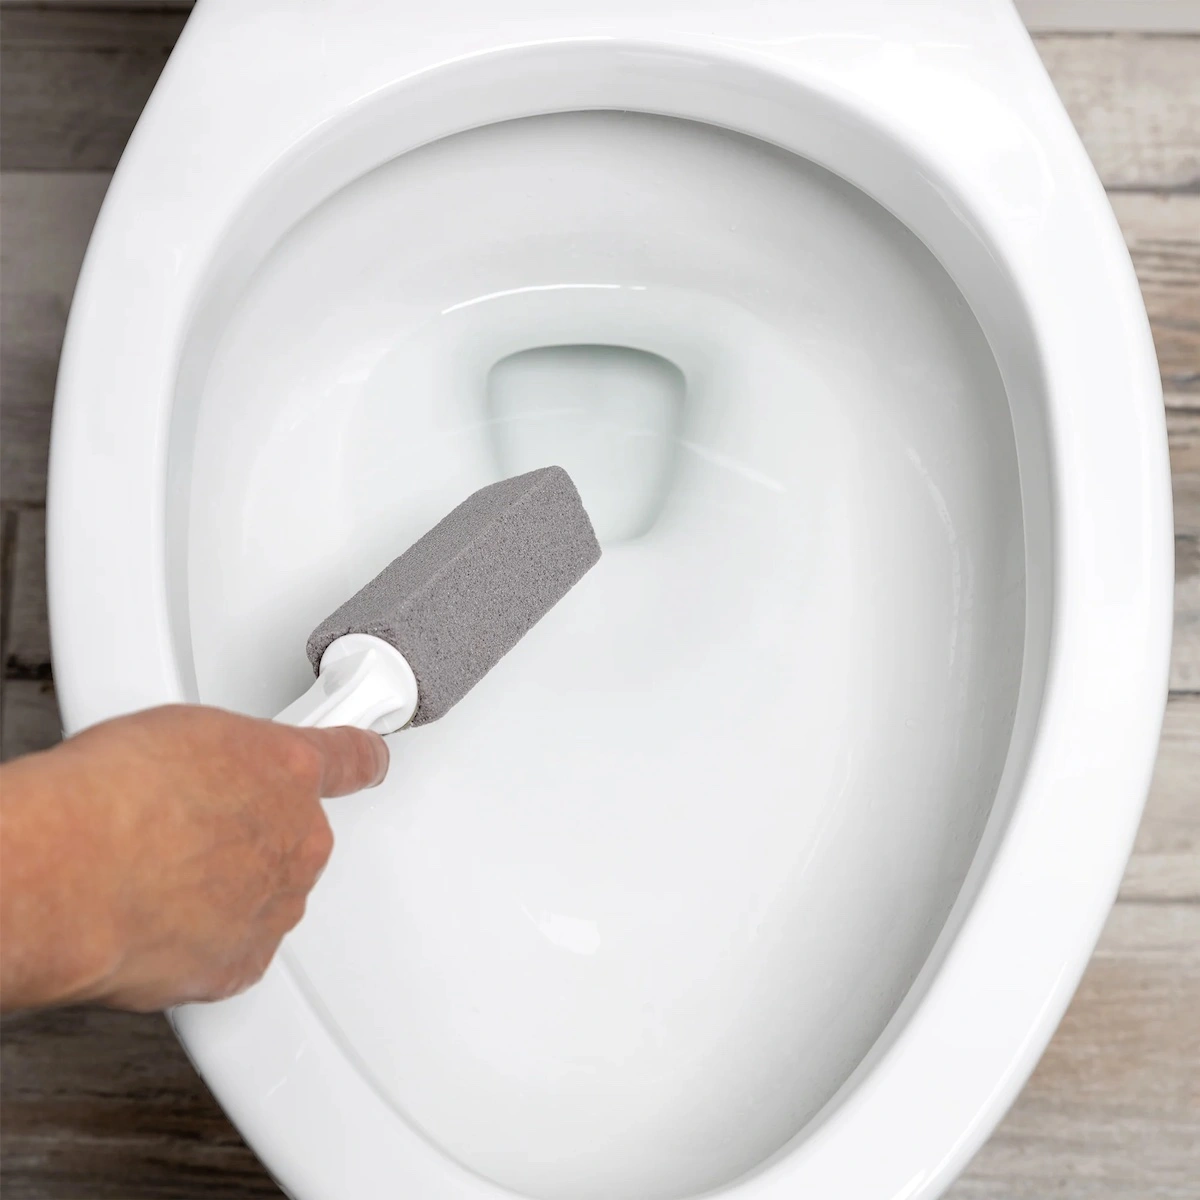 tipps fuer saubere toilette bimsstein gegen urinstein und kalk